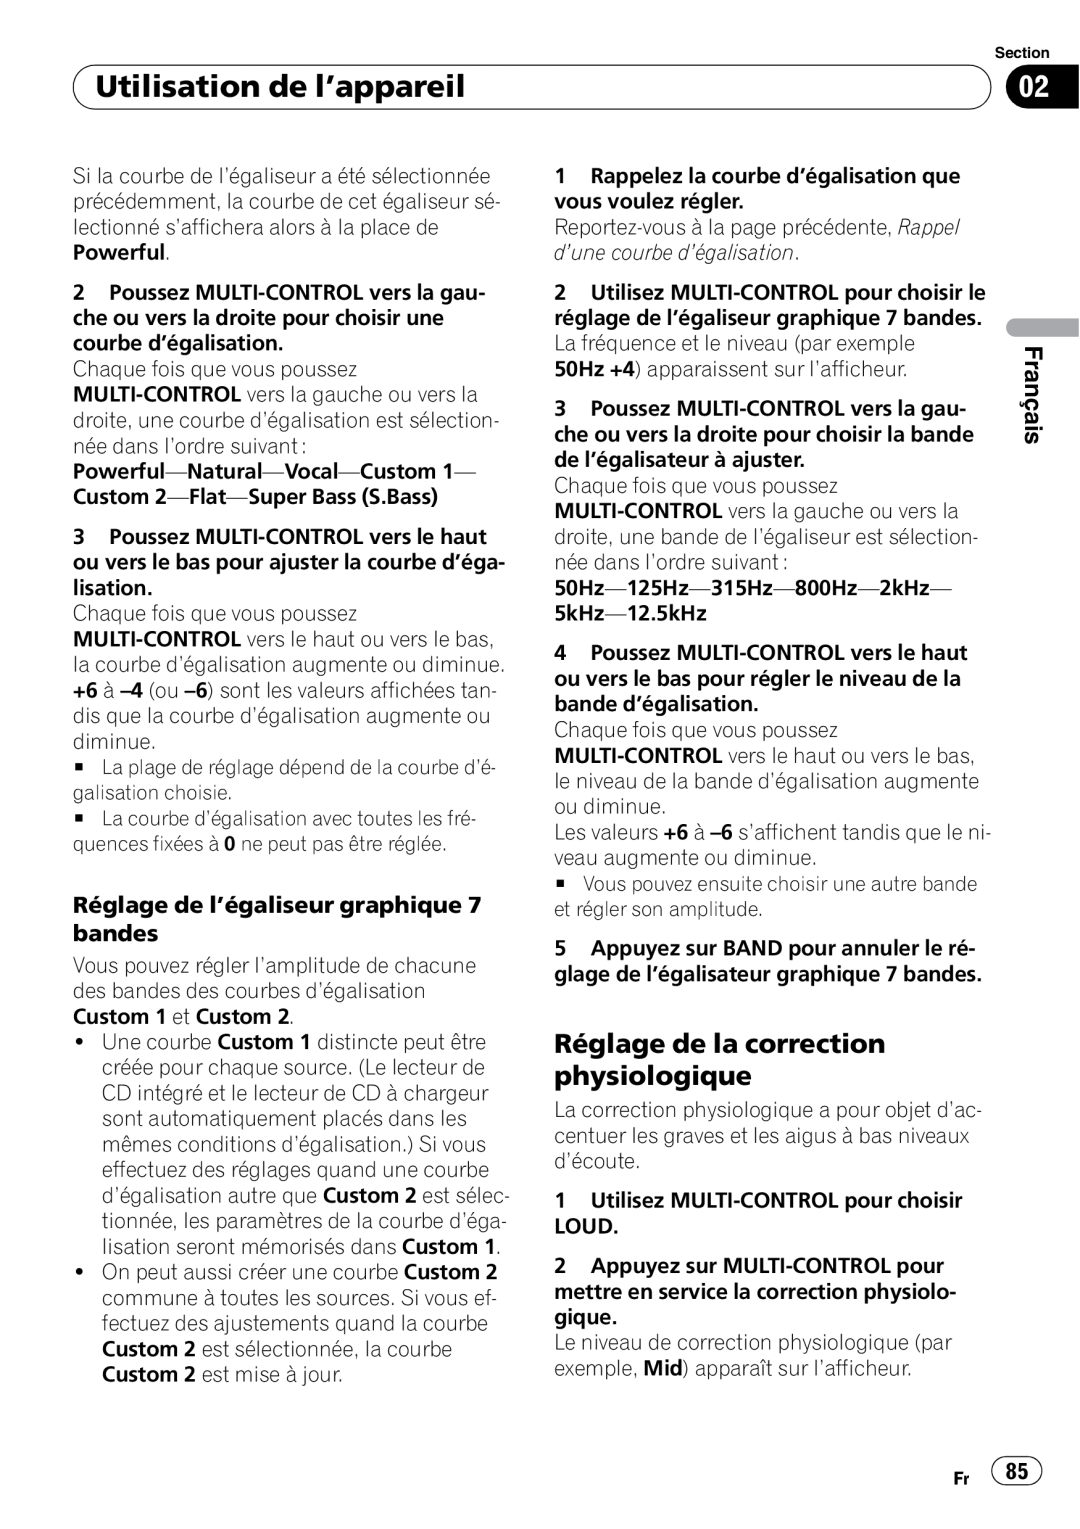 Pioneer DEH-P5900IB Réglage de la correction physiologique, Réglage de l’égaliseur graphique 7 bandes, Français 